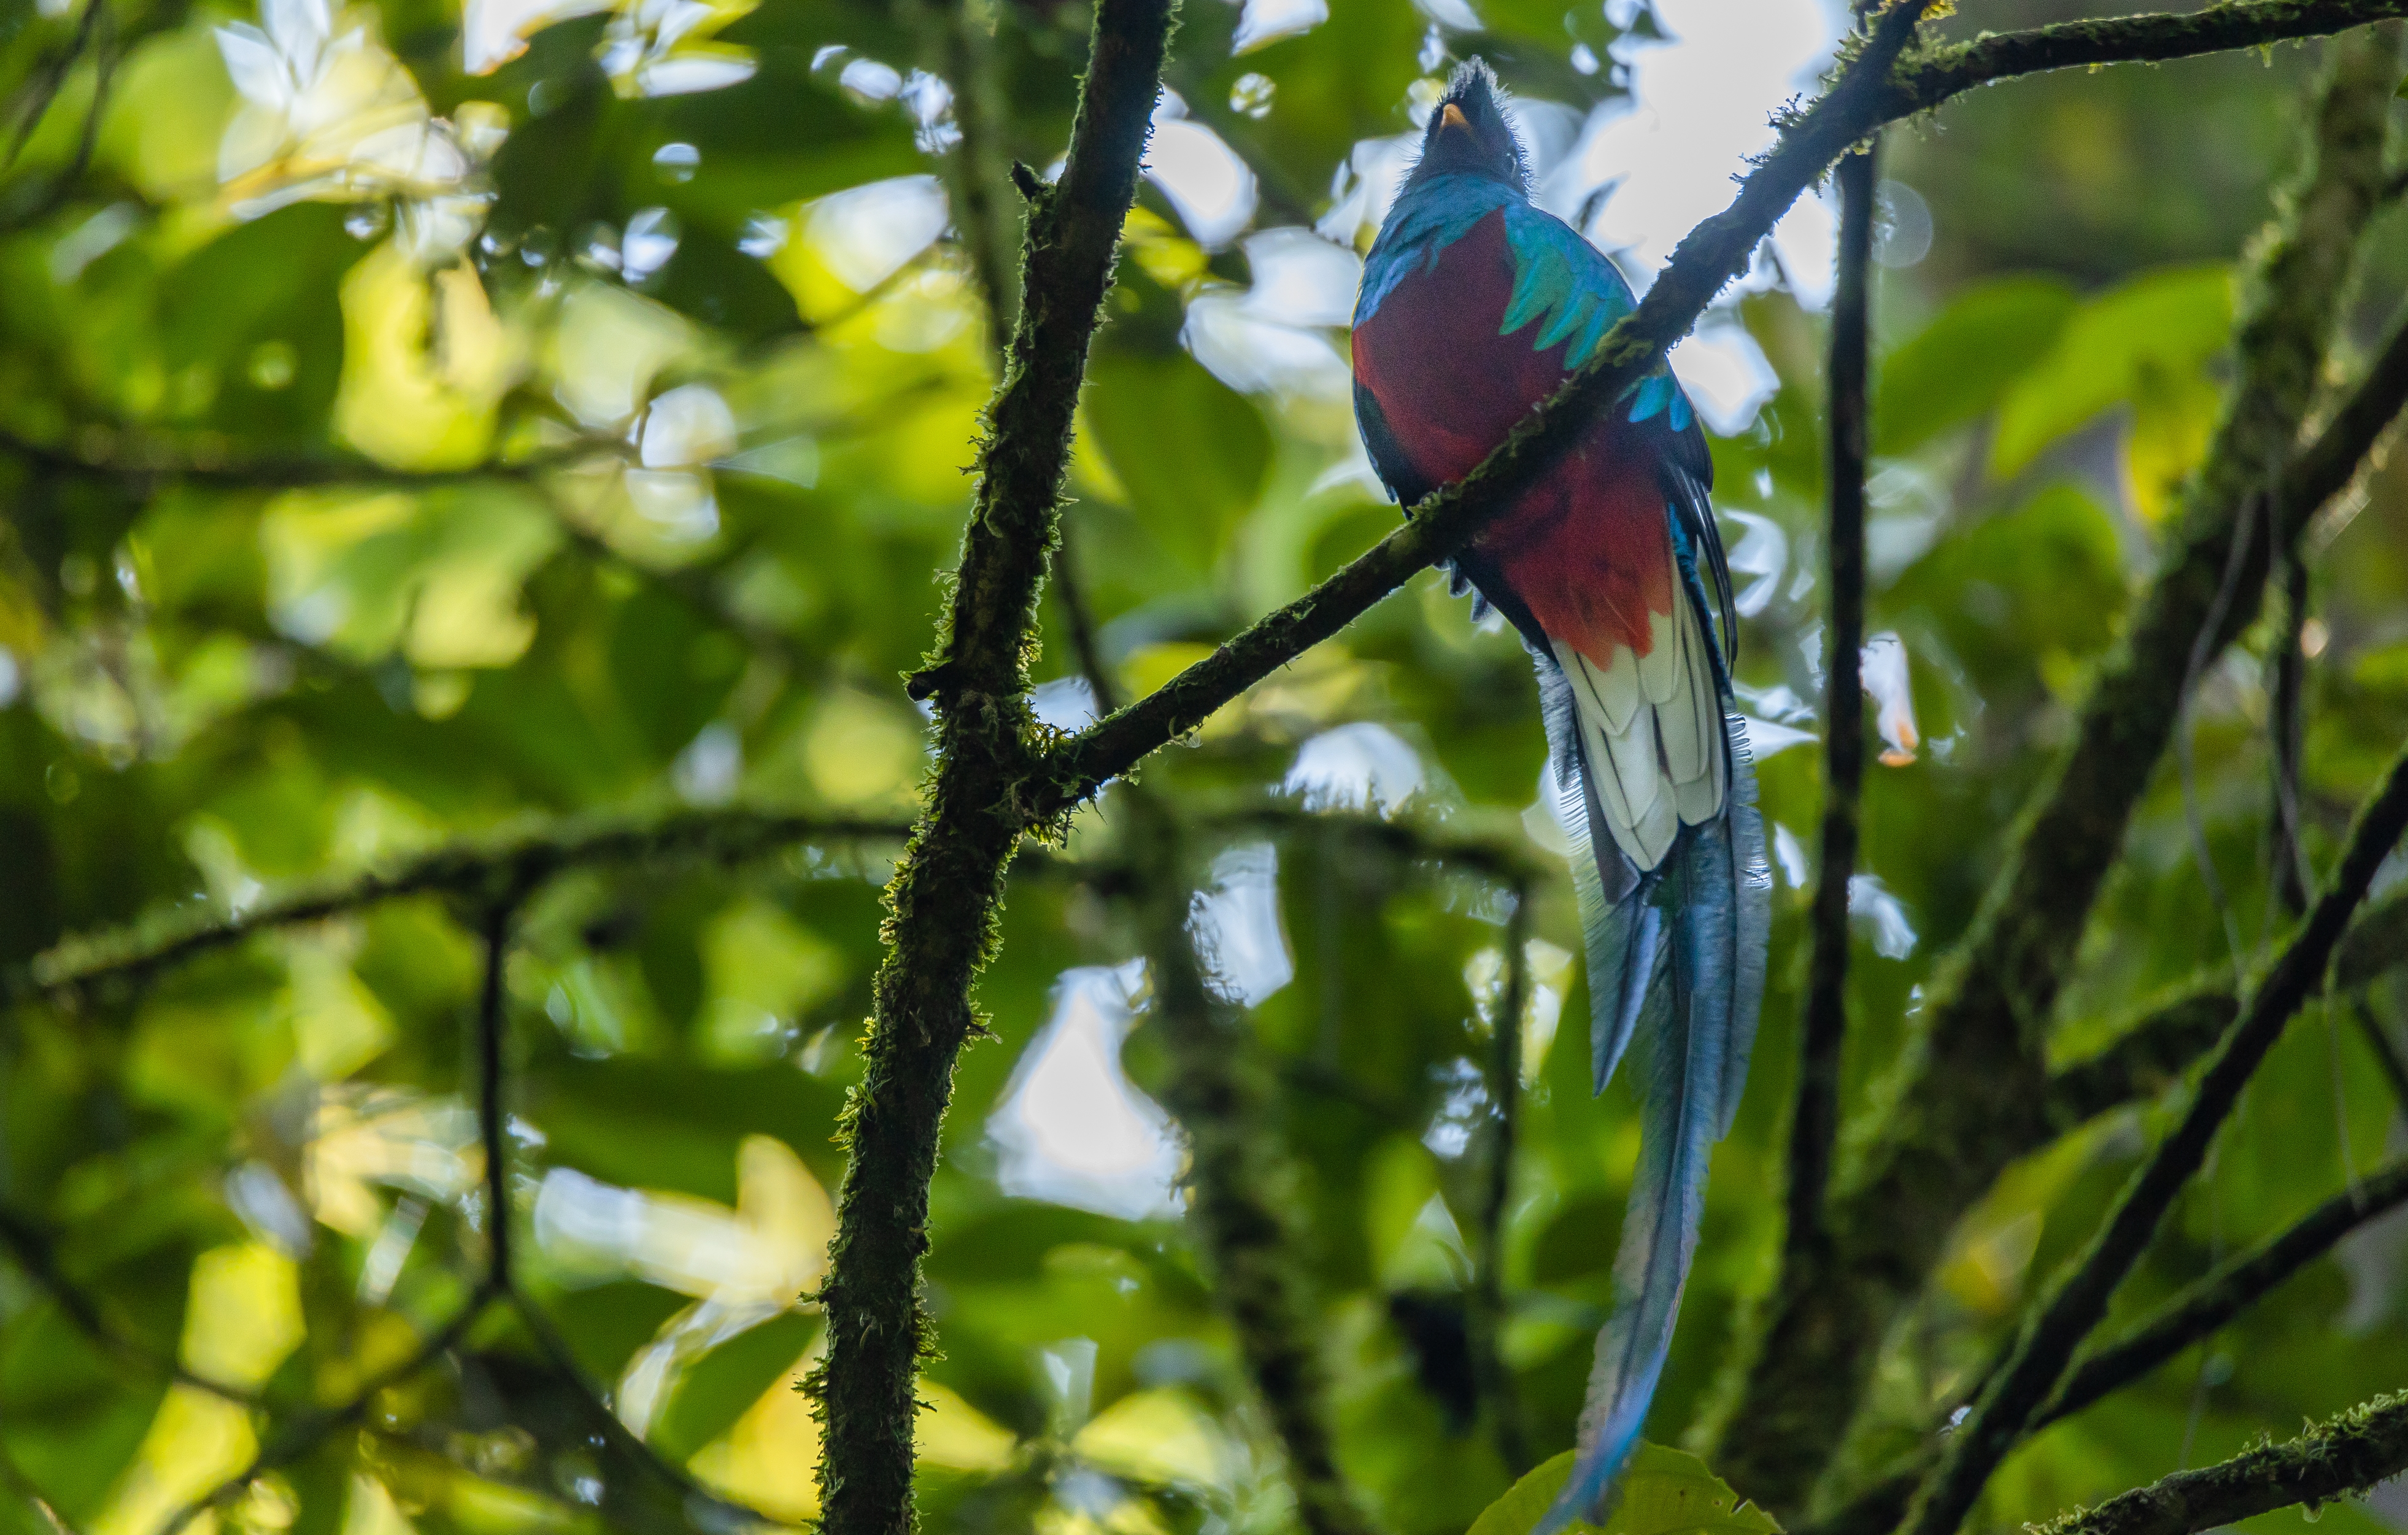 El número de quetzales se ha incrementado en el Refugio del Quetzal, en San Marcos. (Foto Prensa Libre: Cortesía Conap)